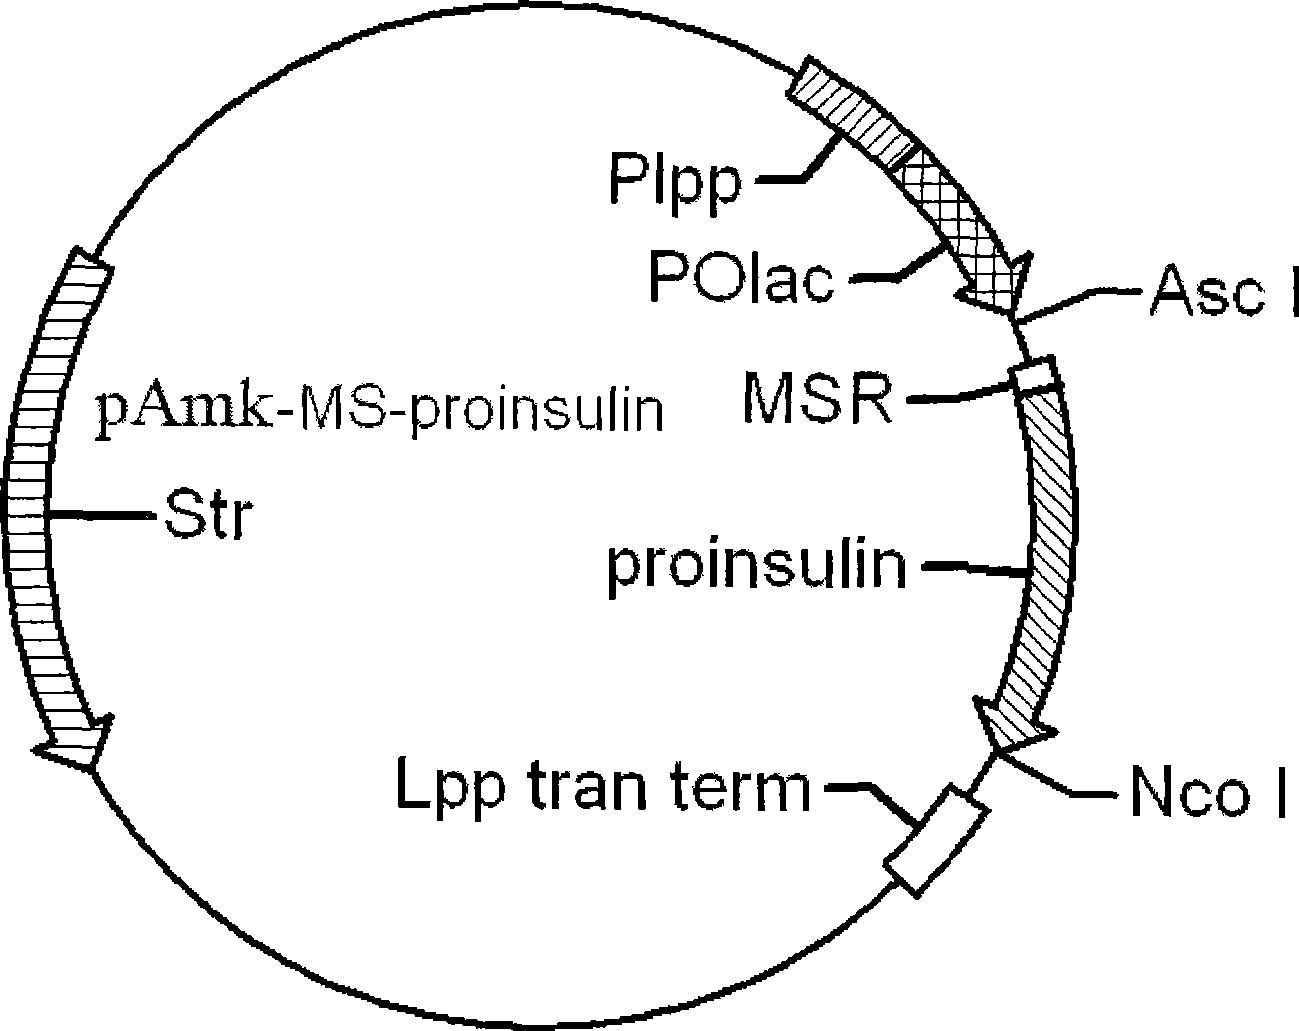 Method for preparing recombinant human insulin and analogs of recombinant human insulin